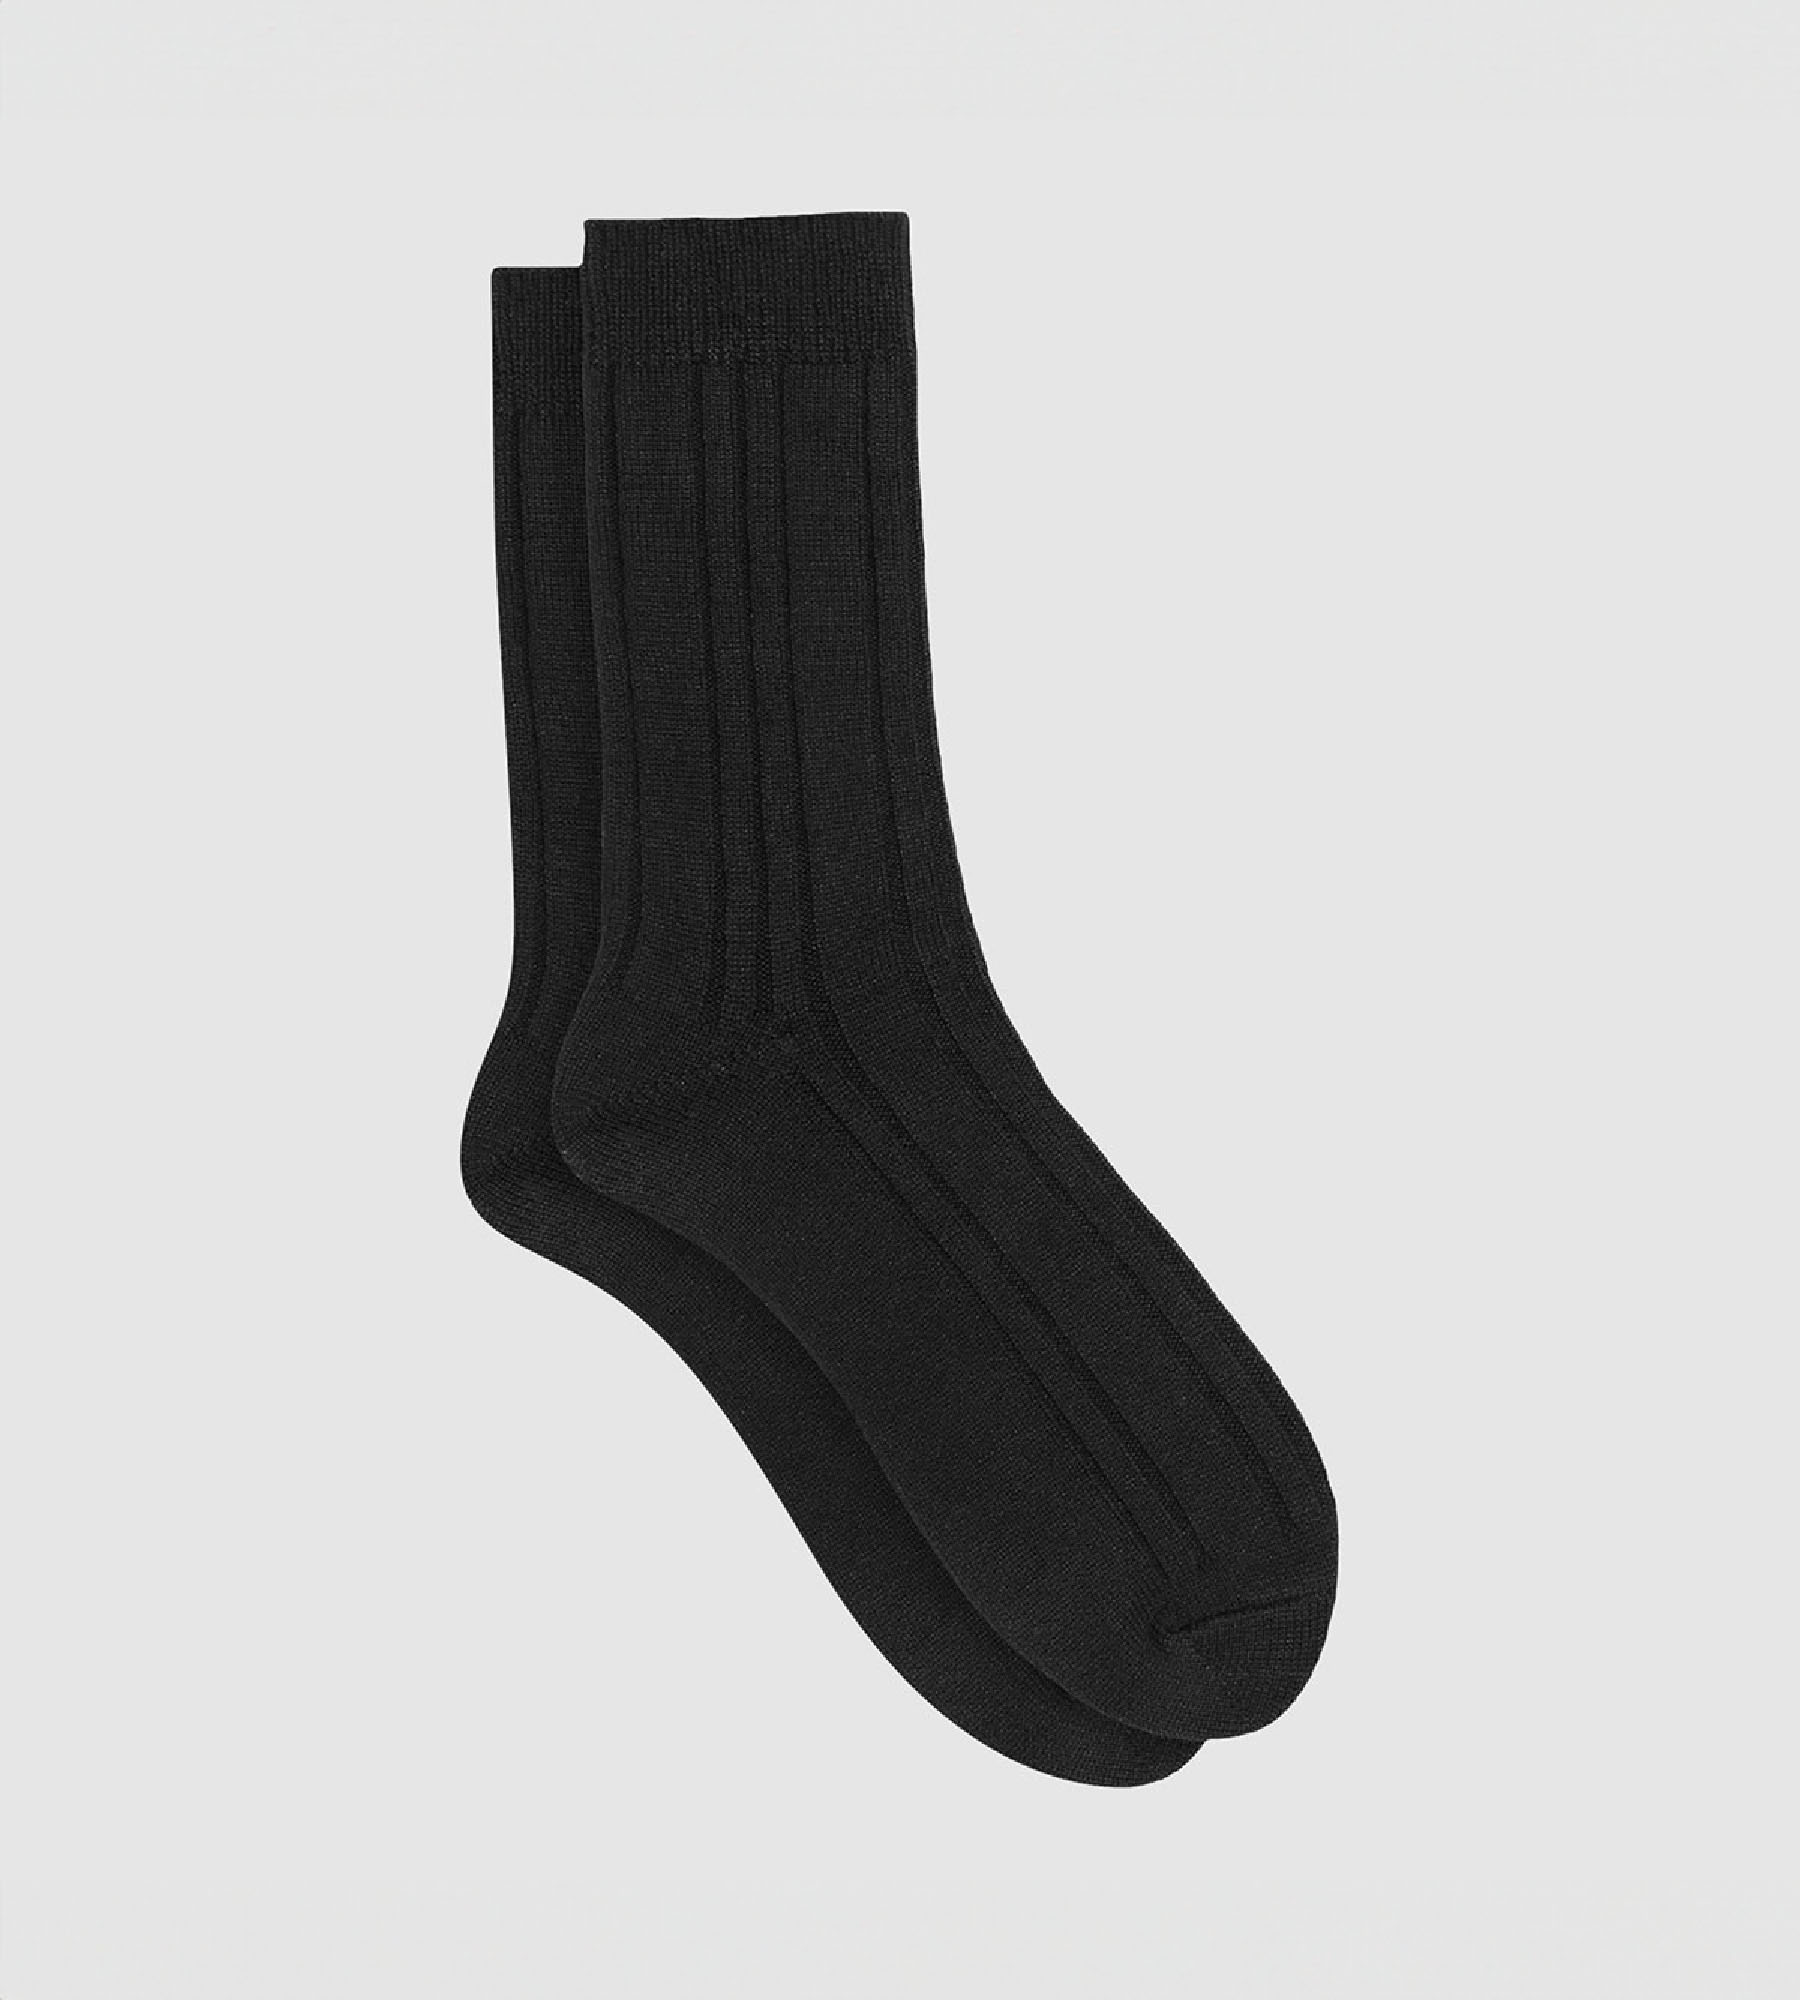 ② paire de chaussette gris/noir taille 43/46 — Chaussettes & Bas — 2ememain